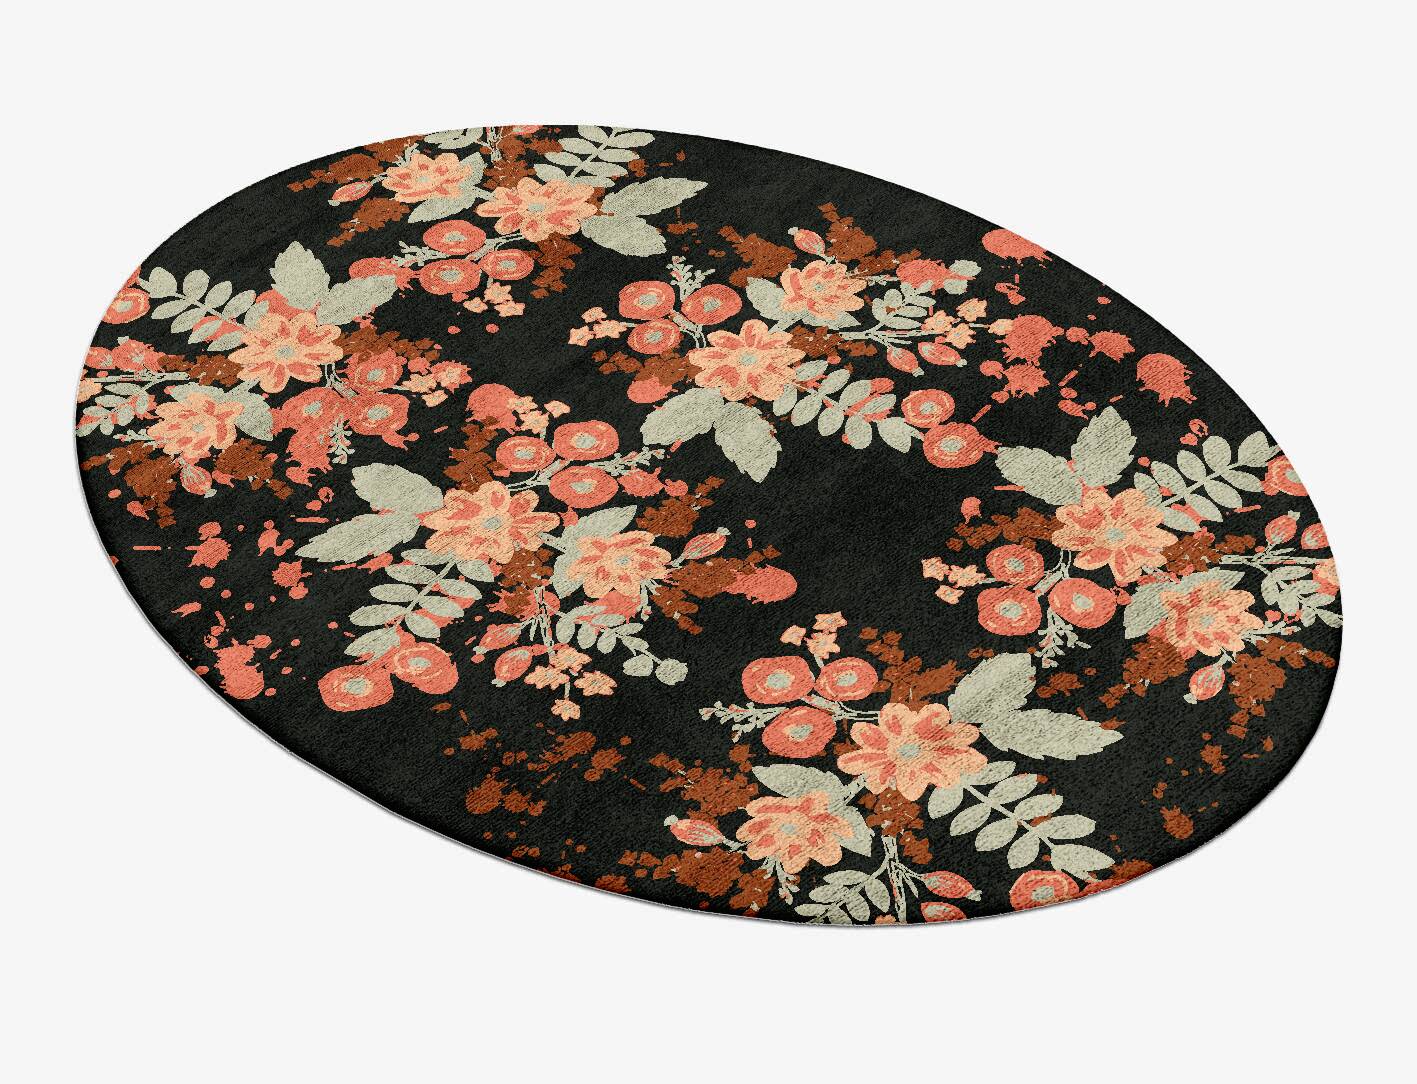 Azalea Floral Oval Hand Tufted Bamboo Silk Custom Rug by Rug Artisan